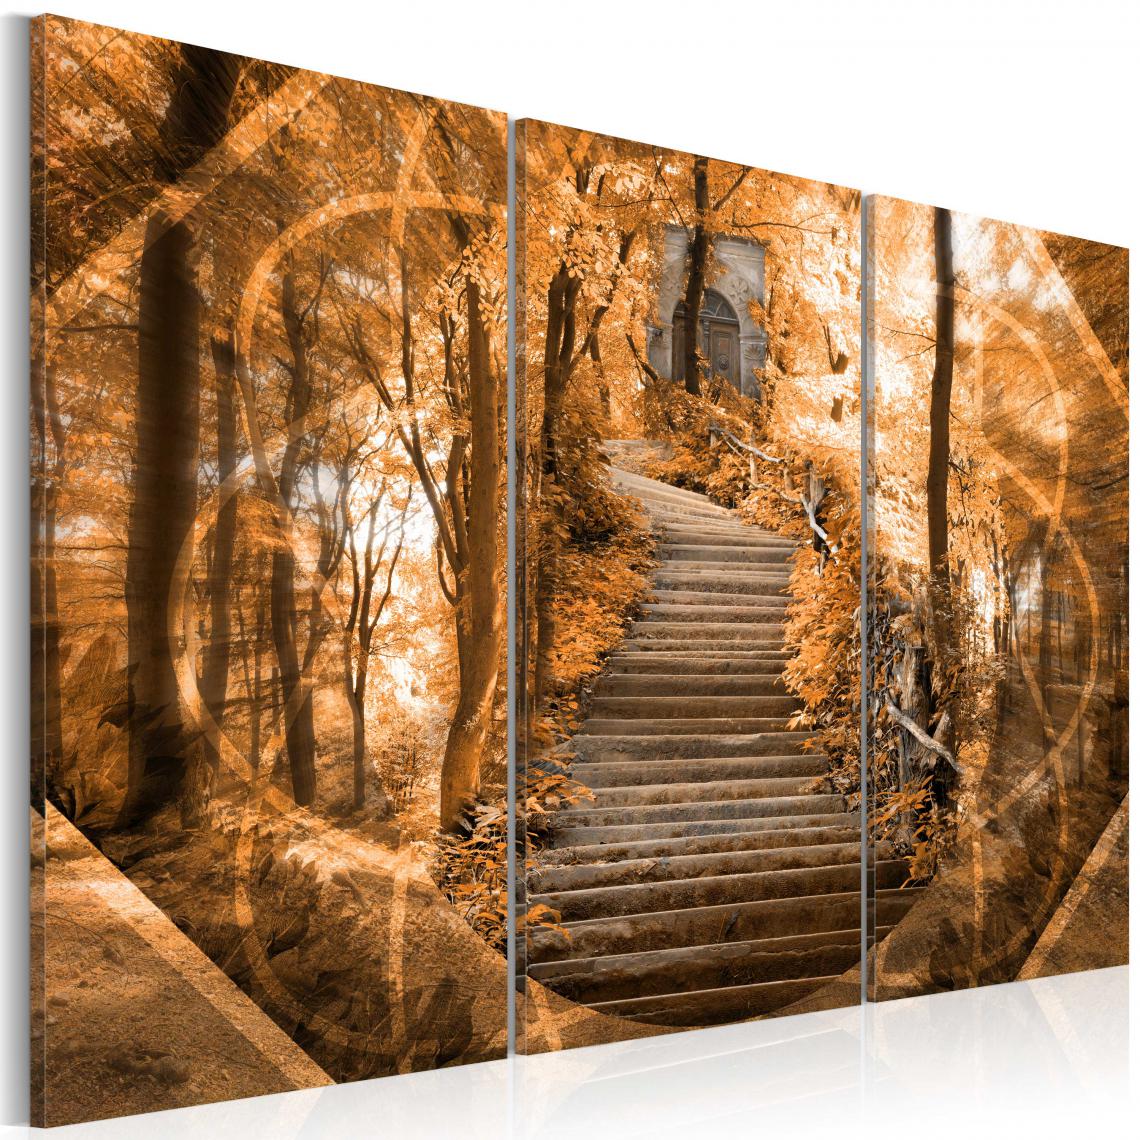 Decoshop26 - Tableau sur toile en 3 panneaux décoration murale image imprimée cadre en bois à suspendre Escalier vers le ciel 120x80 cm 11_0002085 - Tableaux, peintures